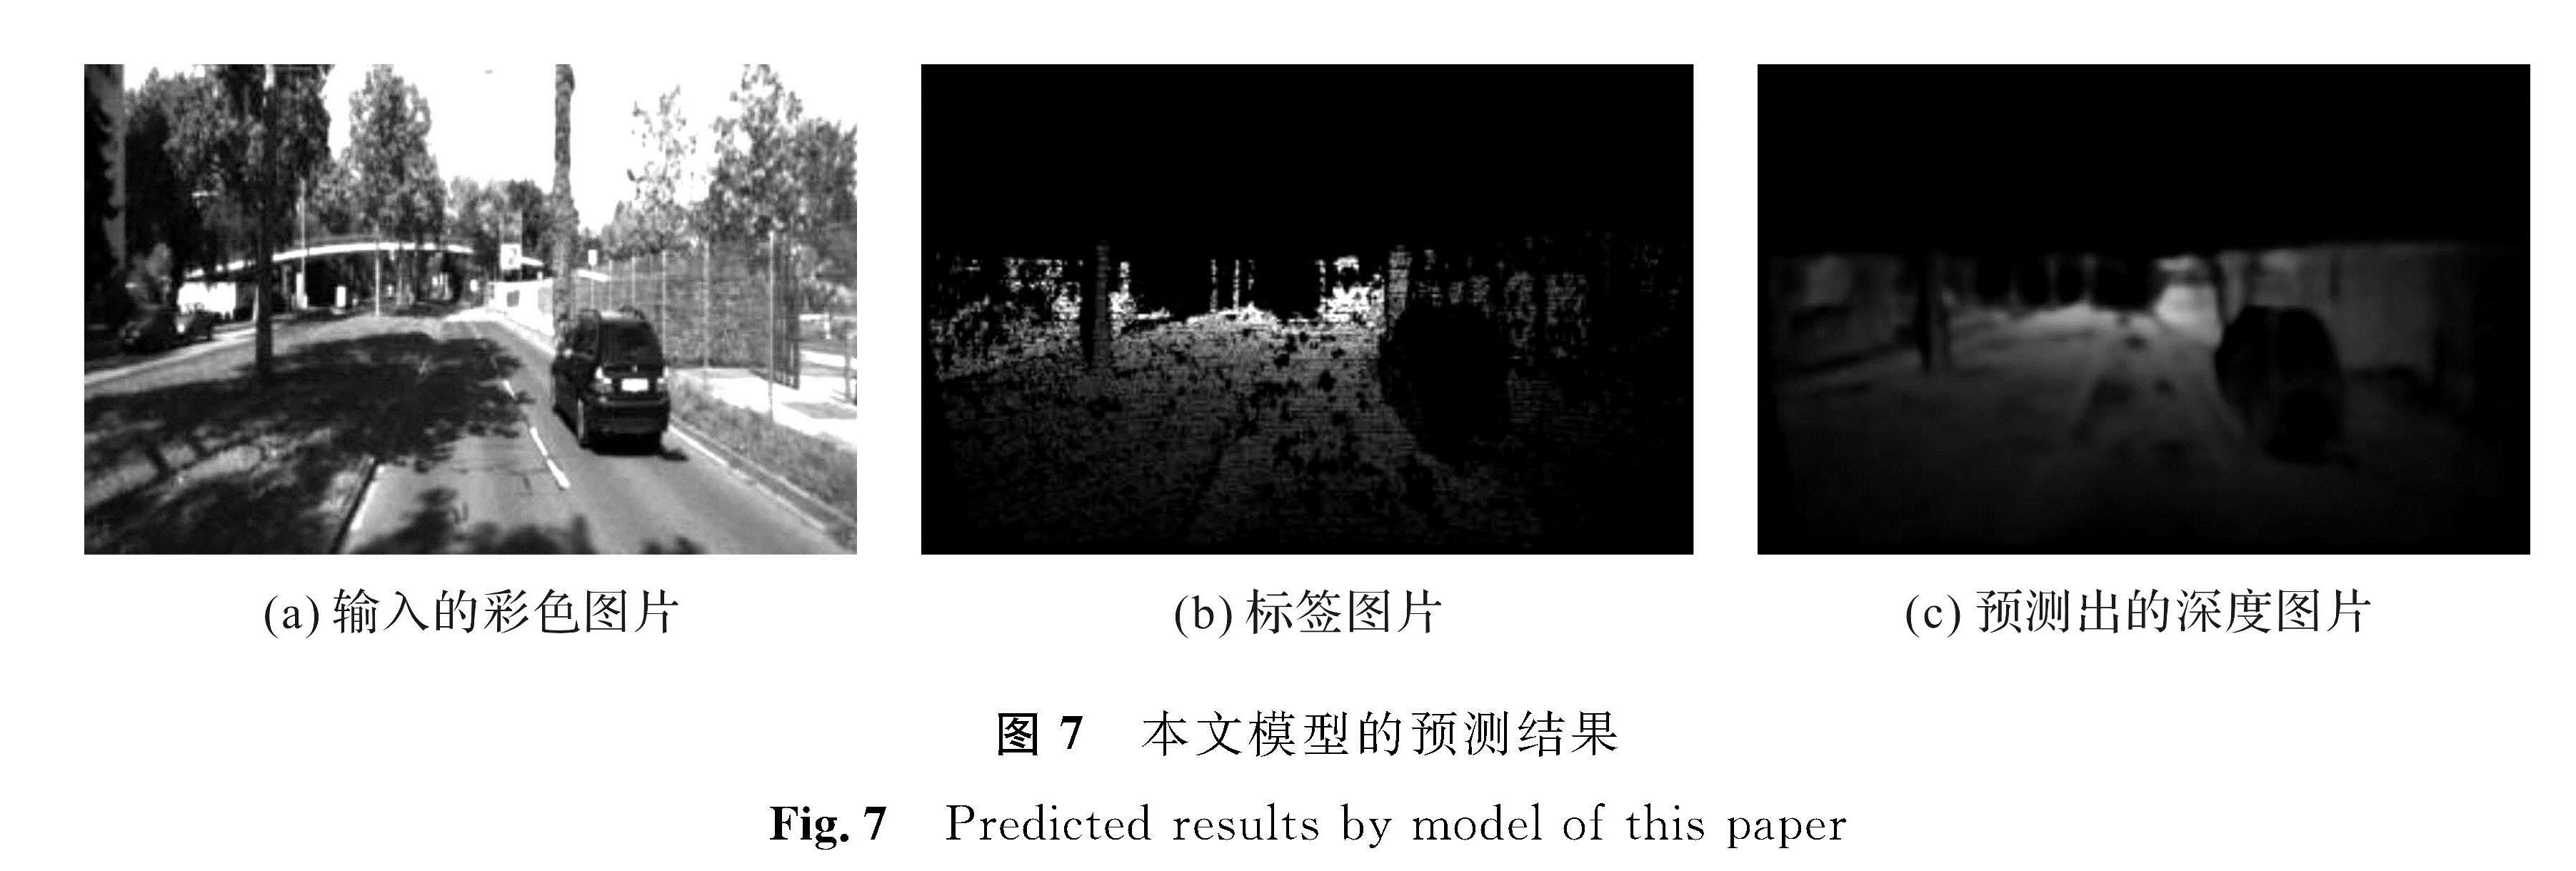 图7 本文模型的预测结果<br/>Fig.7 Predicted results by model of this paper